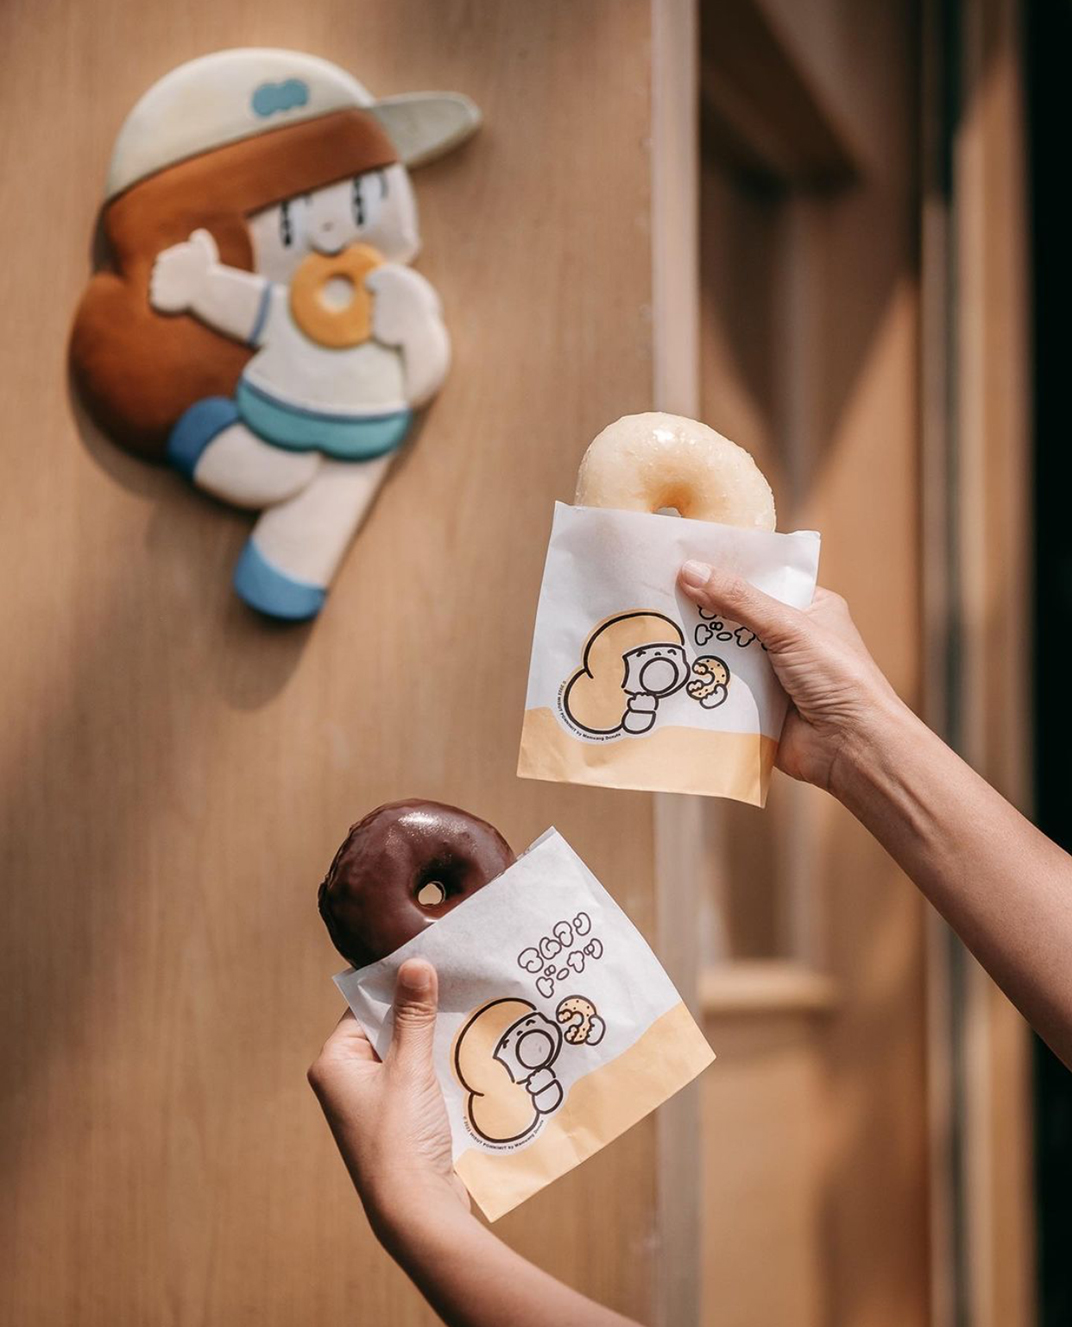 甜甜圈Mamuang Donuts 泰国 甜甜圈 木色 吉祥物 包装设计 插画设计 logo设计 vi设计 空间设计